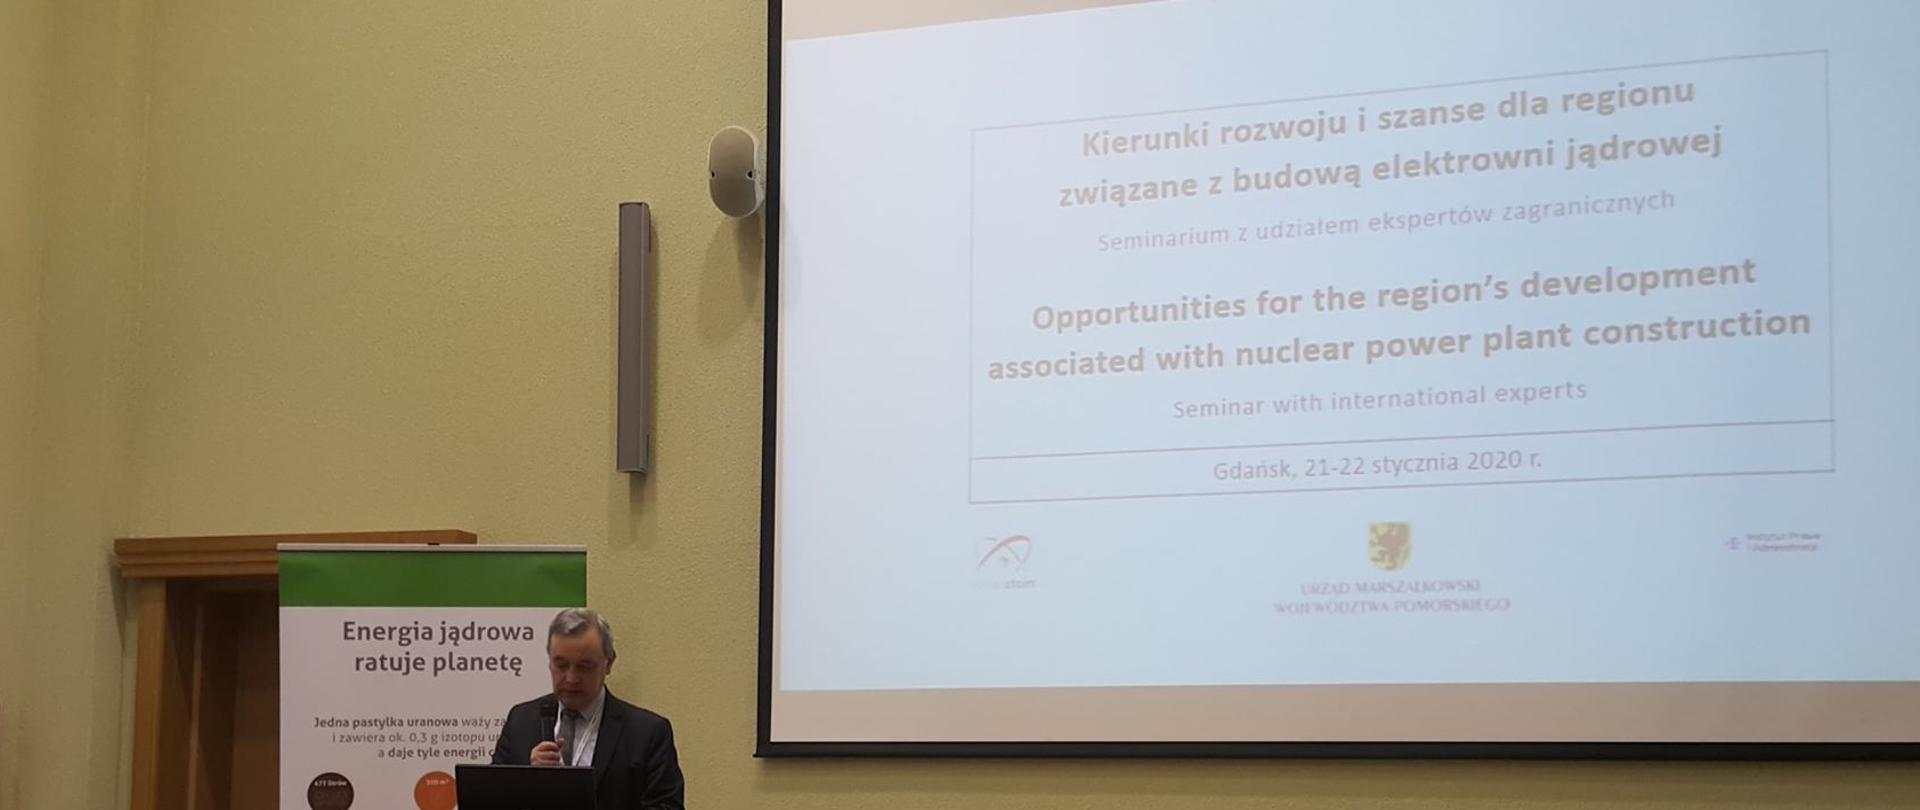 Zbigniew Kubacki - Zastępca Dyrektora Departamentu Energii Jądrowej w tle widoczna reklama stojąca z napisem Energia jądrowa ratuje planetę 